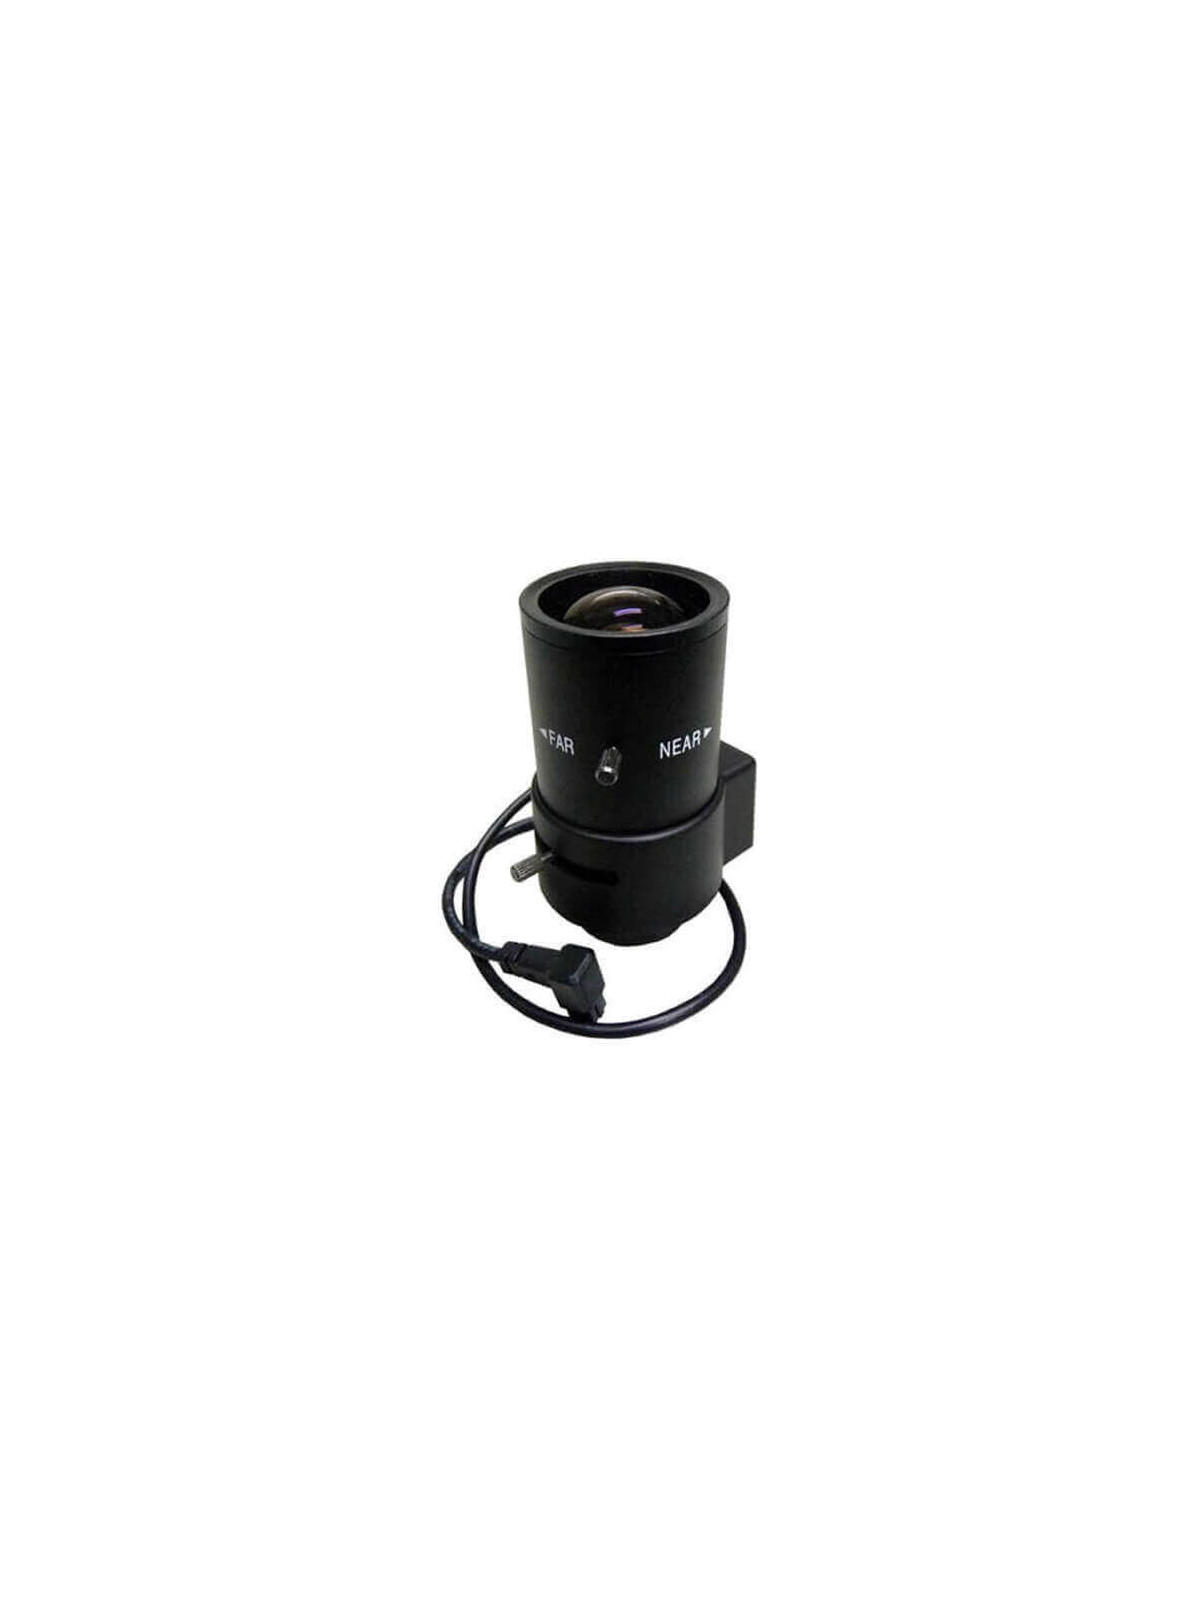 Óptica varifocal auto iris para cámara  2.8 - 12mm 2MP SSV2812GNB